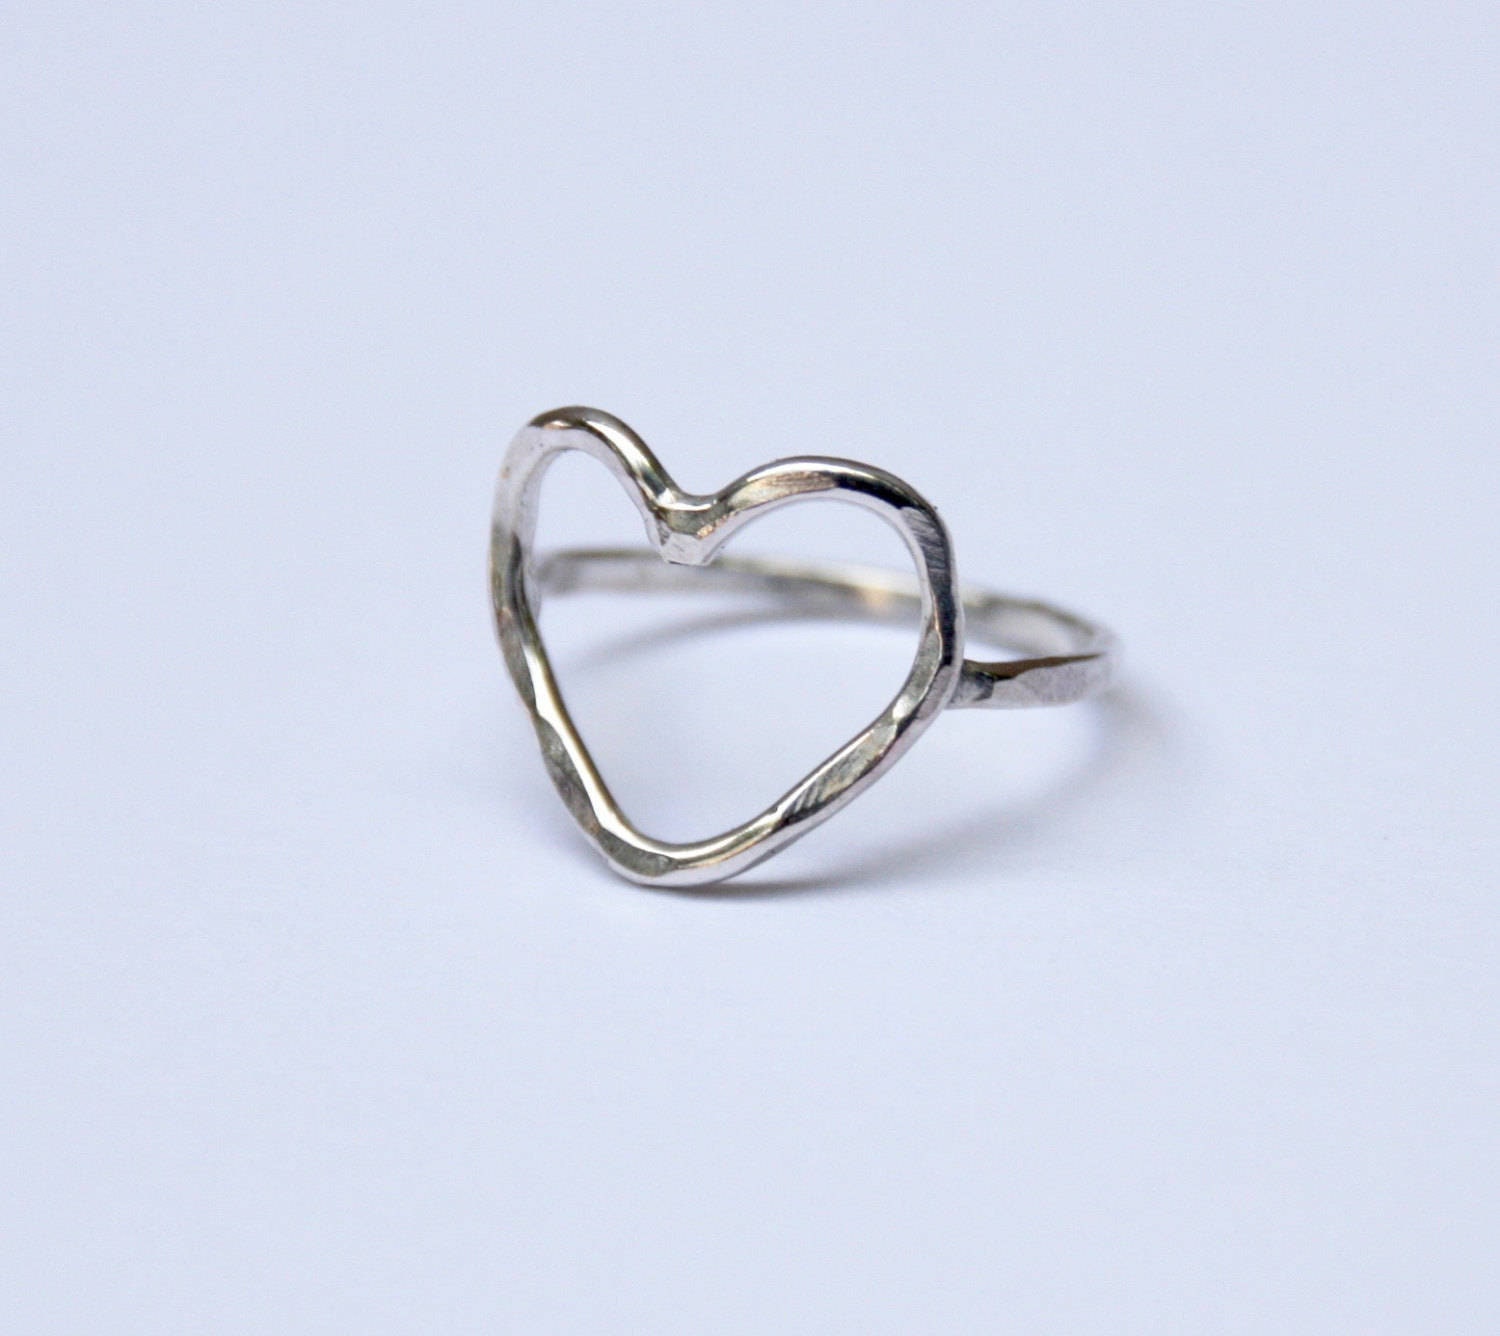 Heart Ring Heart Outline Ring Alternative Engagement Ring | Etsy